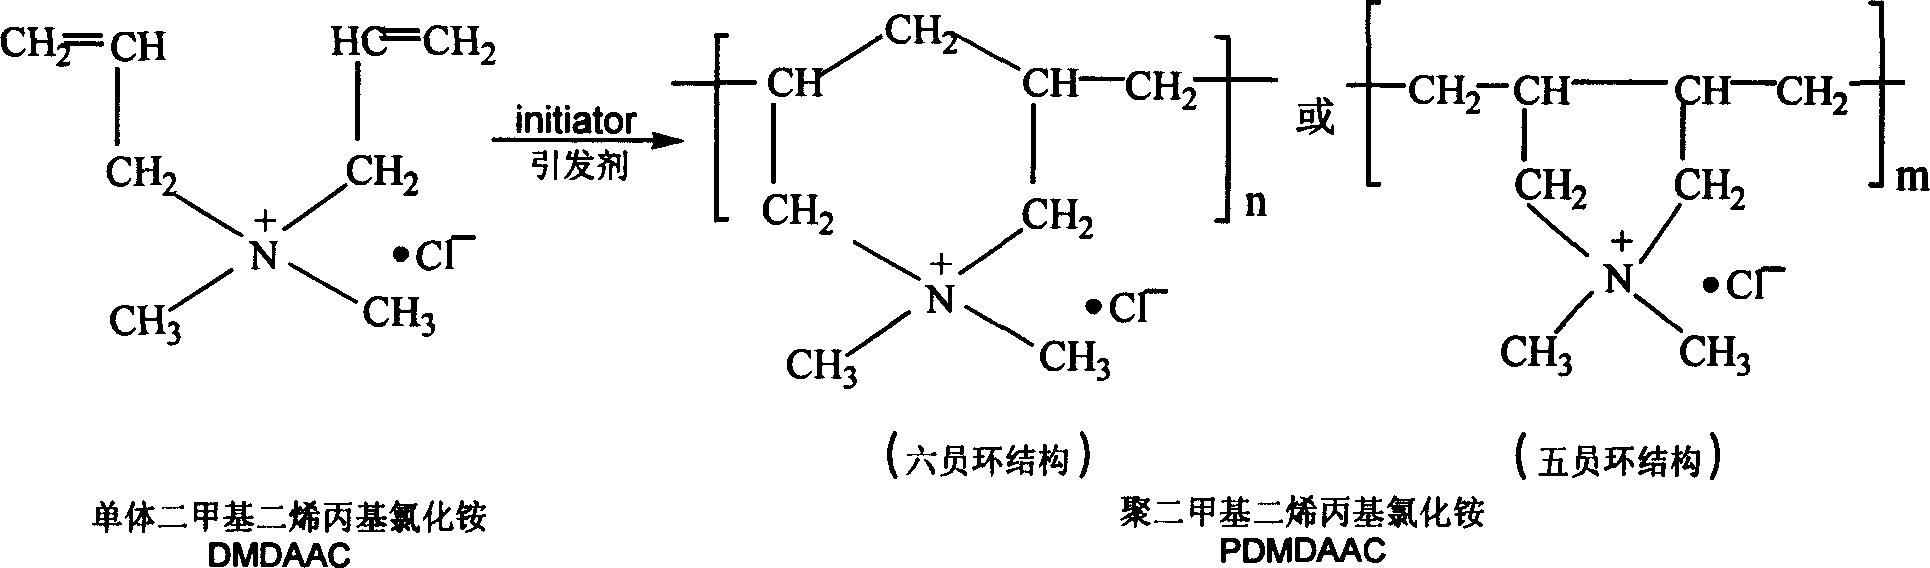 Preparation method of poly dimethyl allyl ammonium chloride with high relative molecular mass